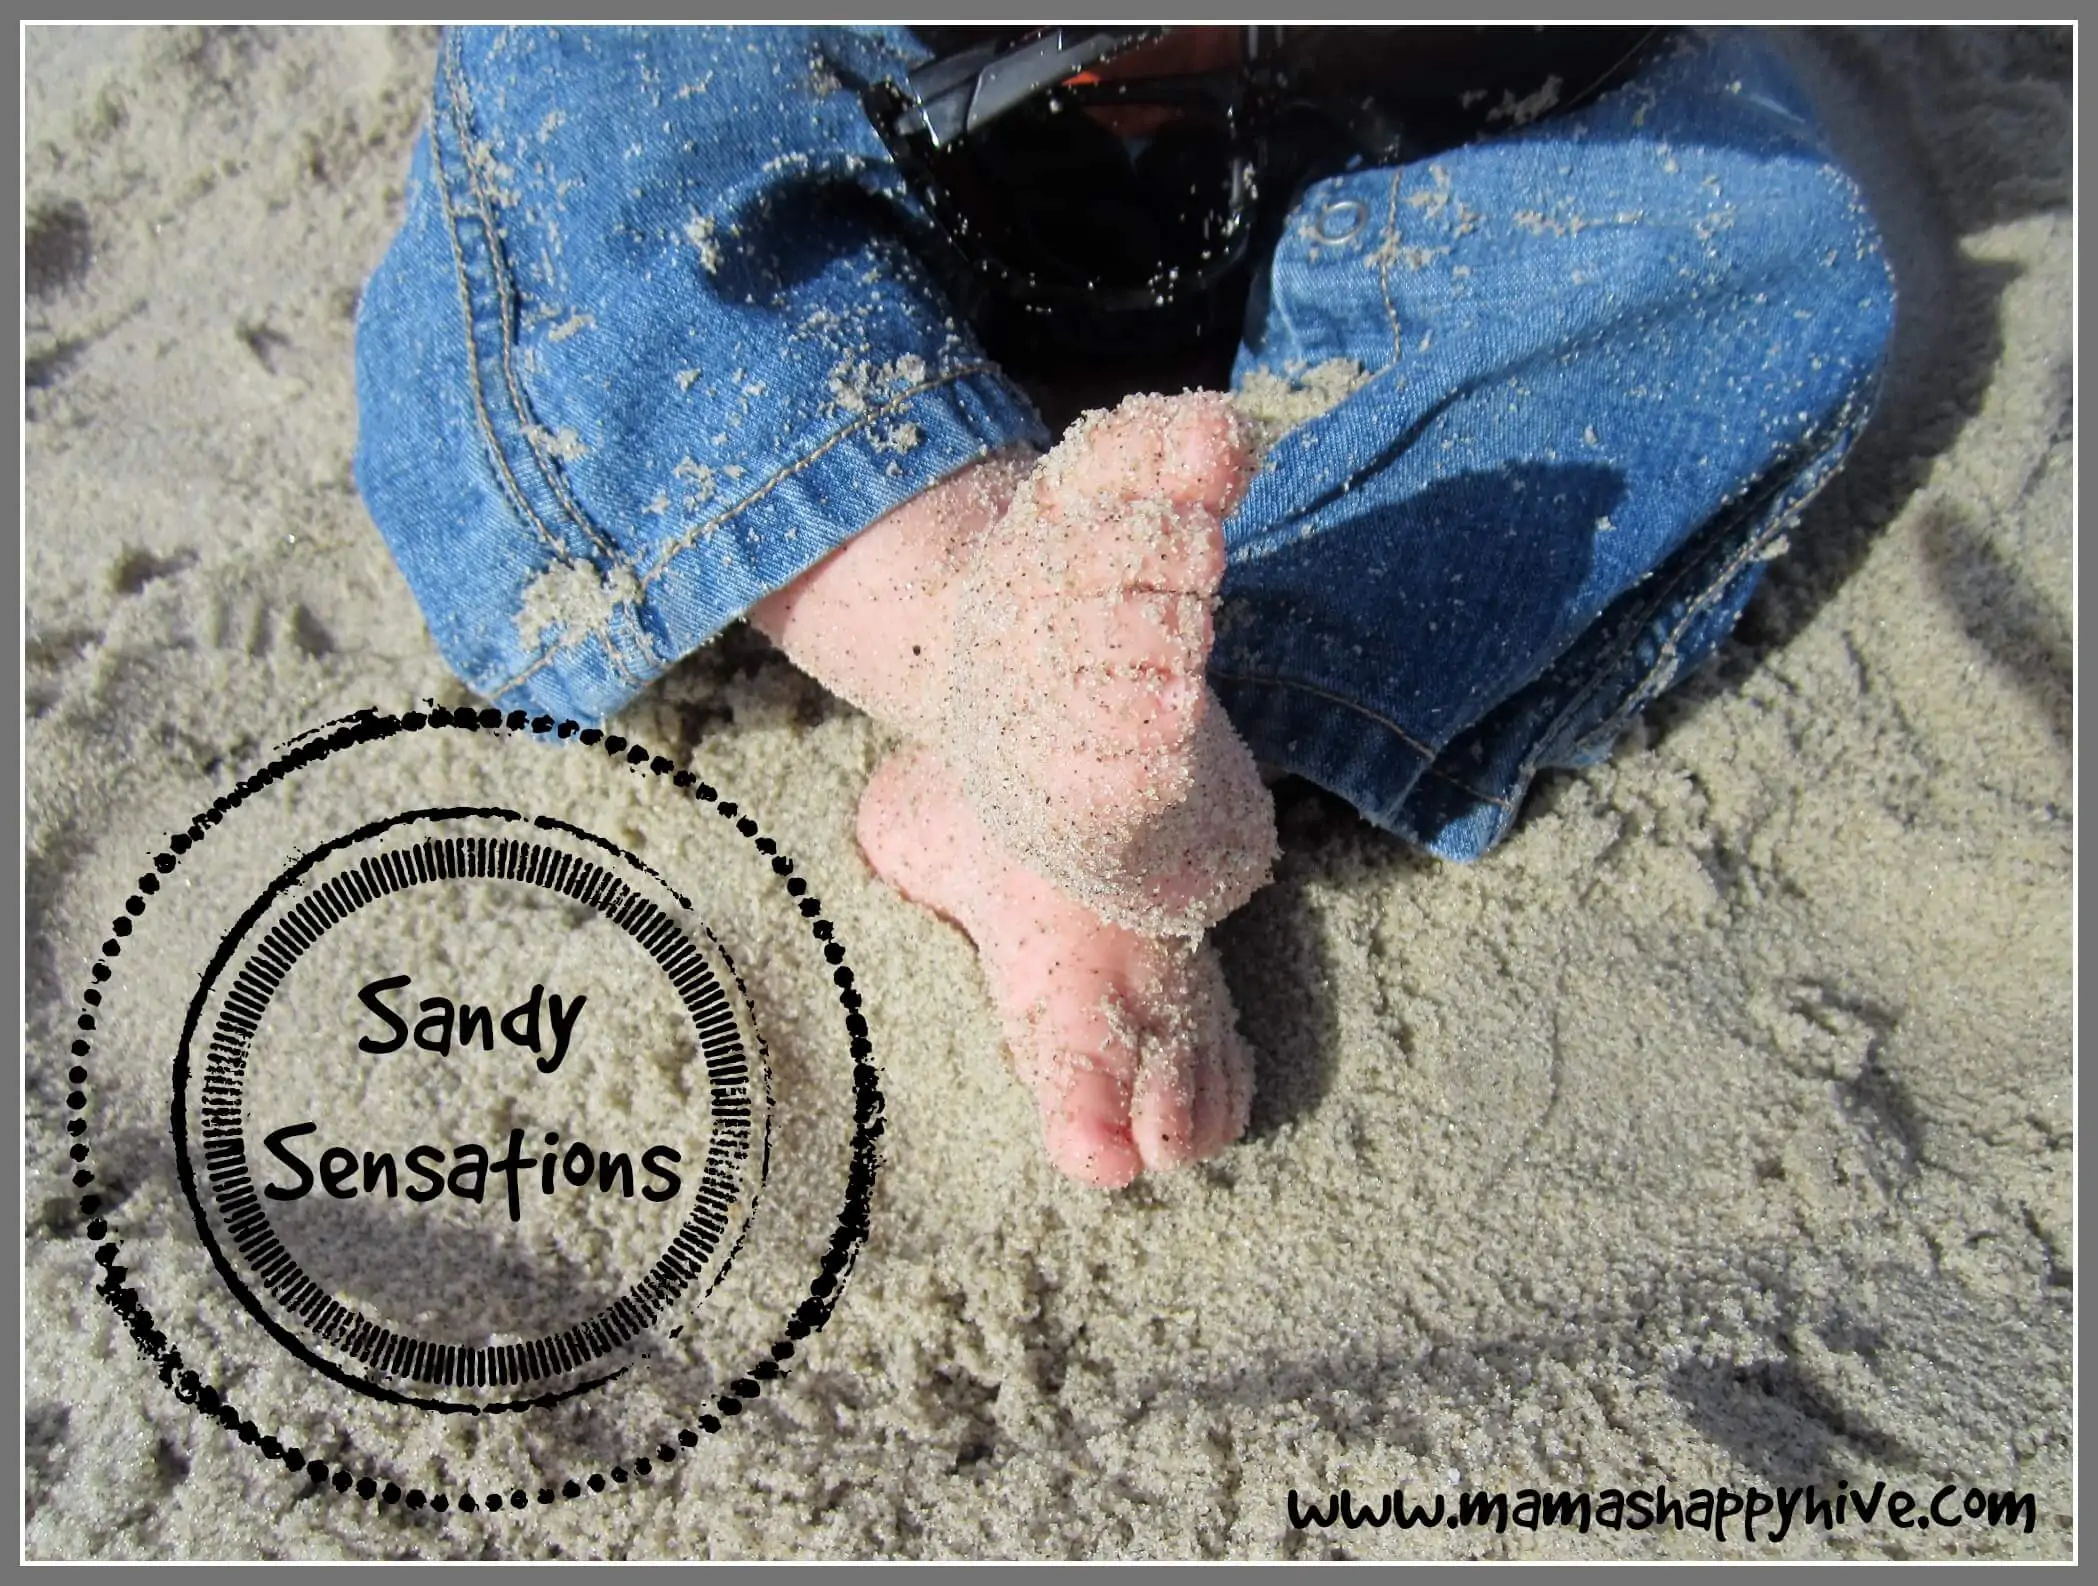 Sandy Sensations